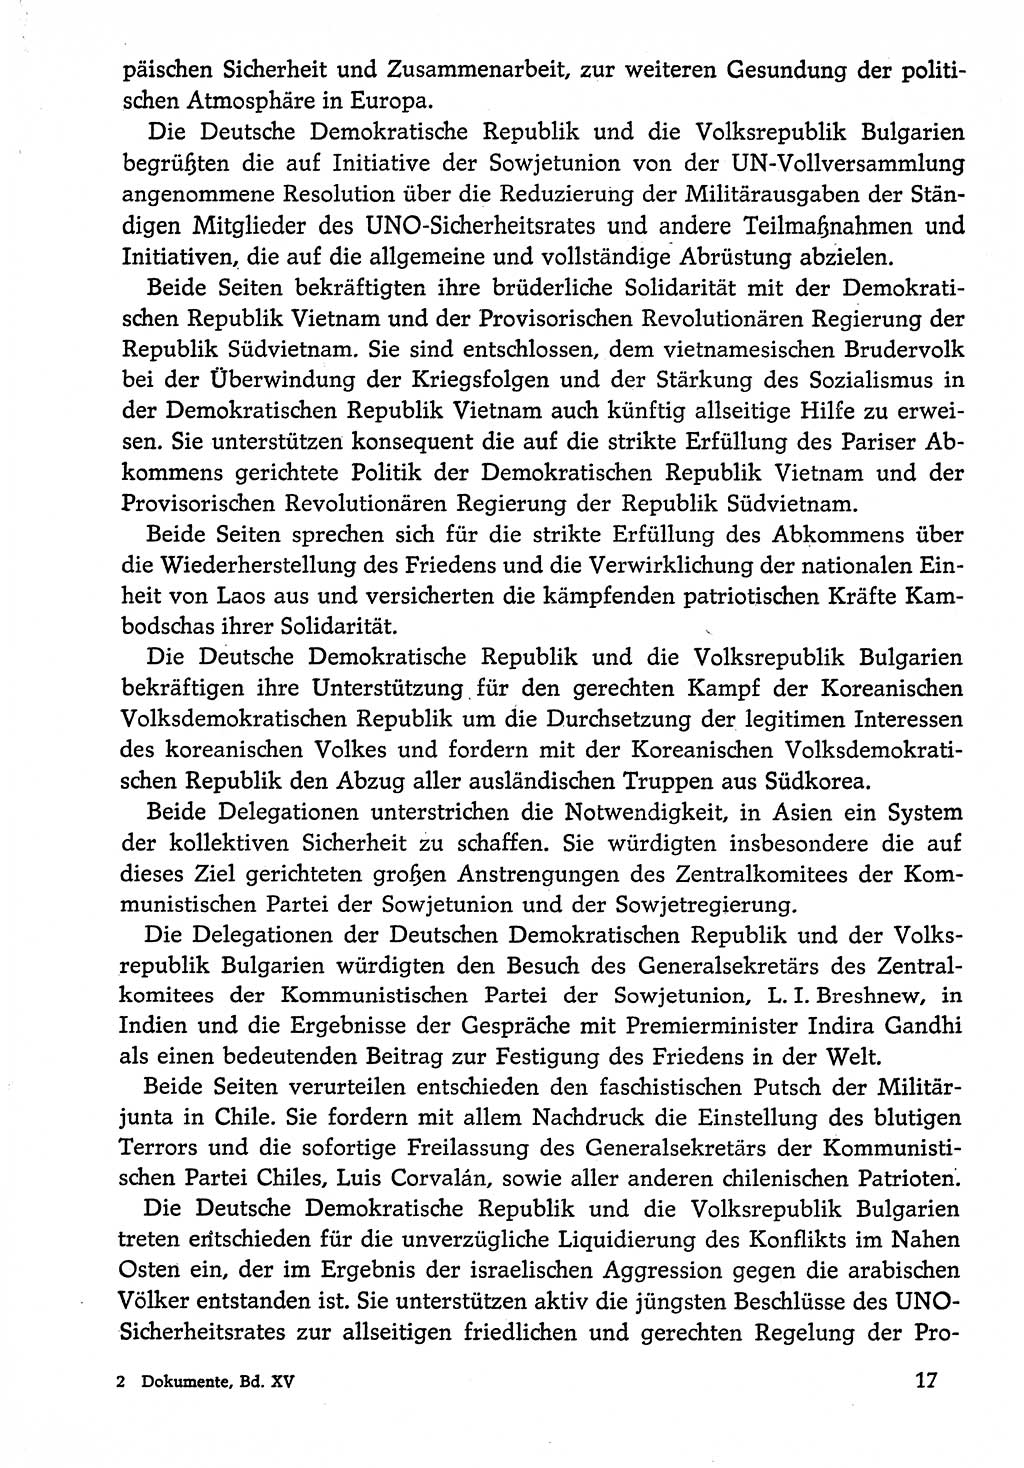 Dokumente der Sozialistischen Einheitspartei Deutschlands (SED) [Deutsche Demokratische Republik (DDR)] 1974-1975, Seite 17 (Dok. SED DDR 1978, Bd. ⅩⅤ, S. 17)